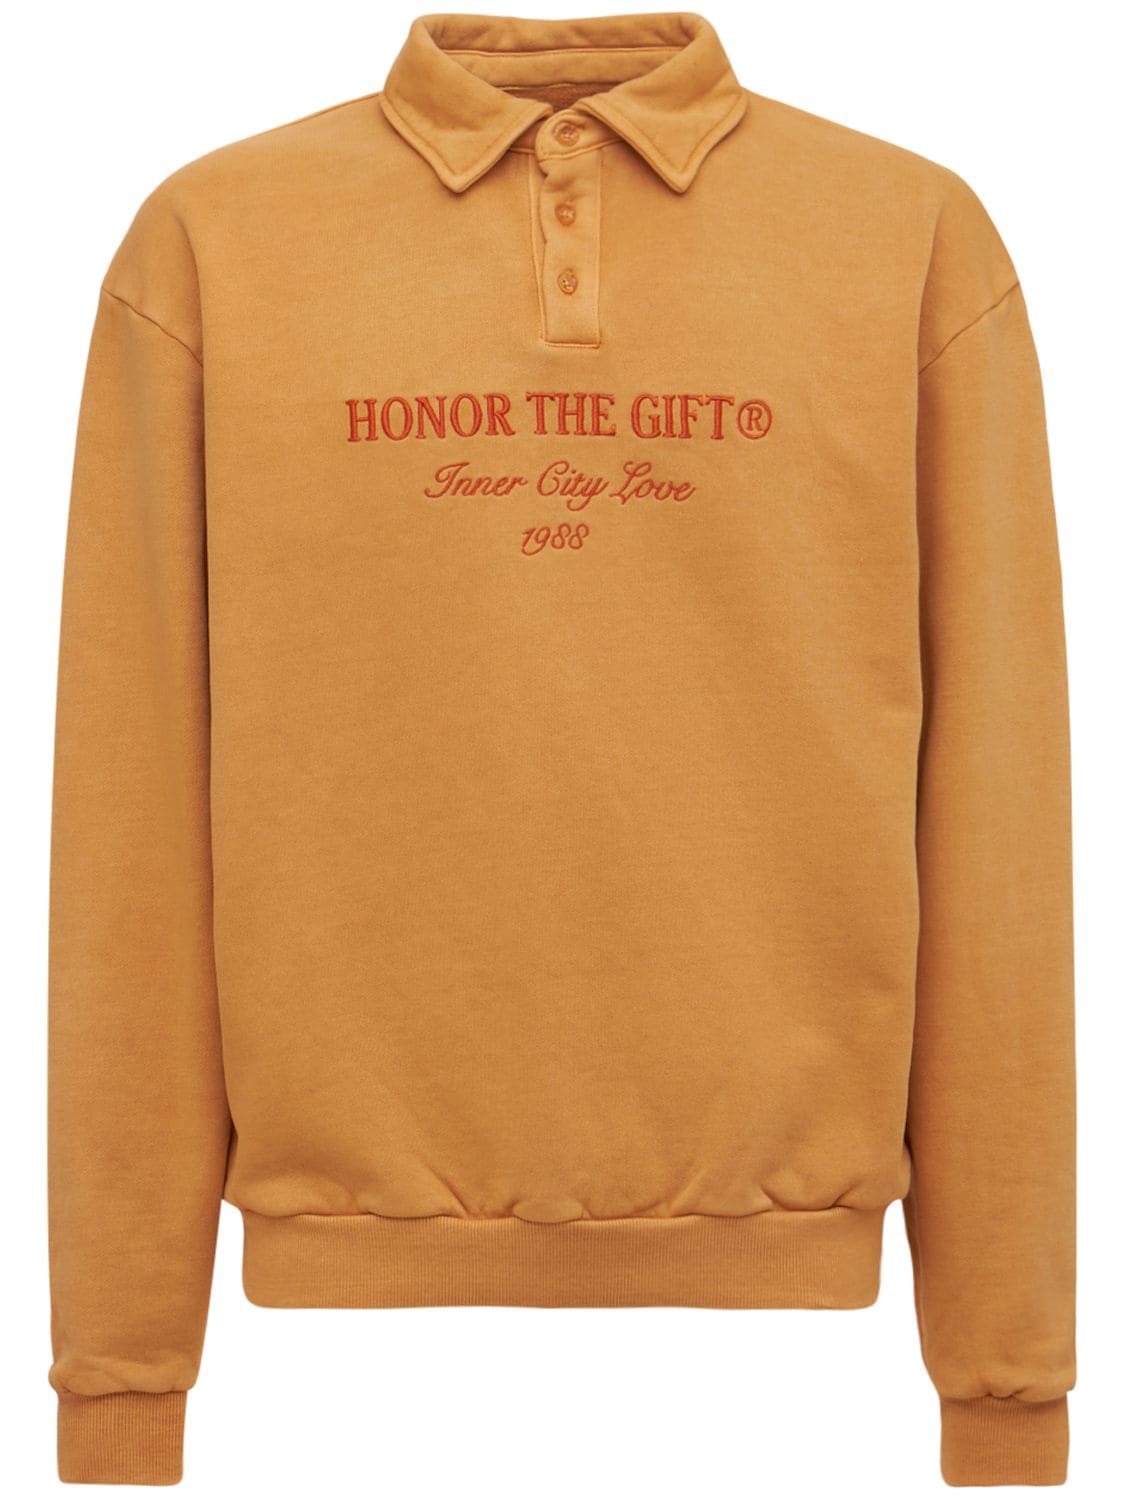 HONOR THE GIFT Rugby Print Cotton Fleece Sweatshirt